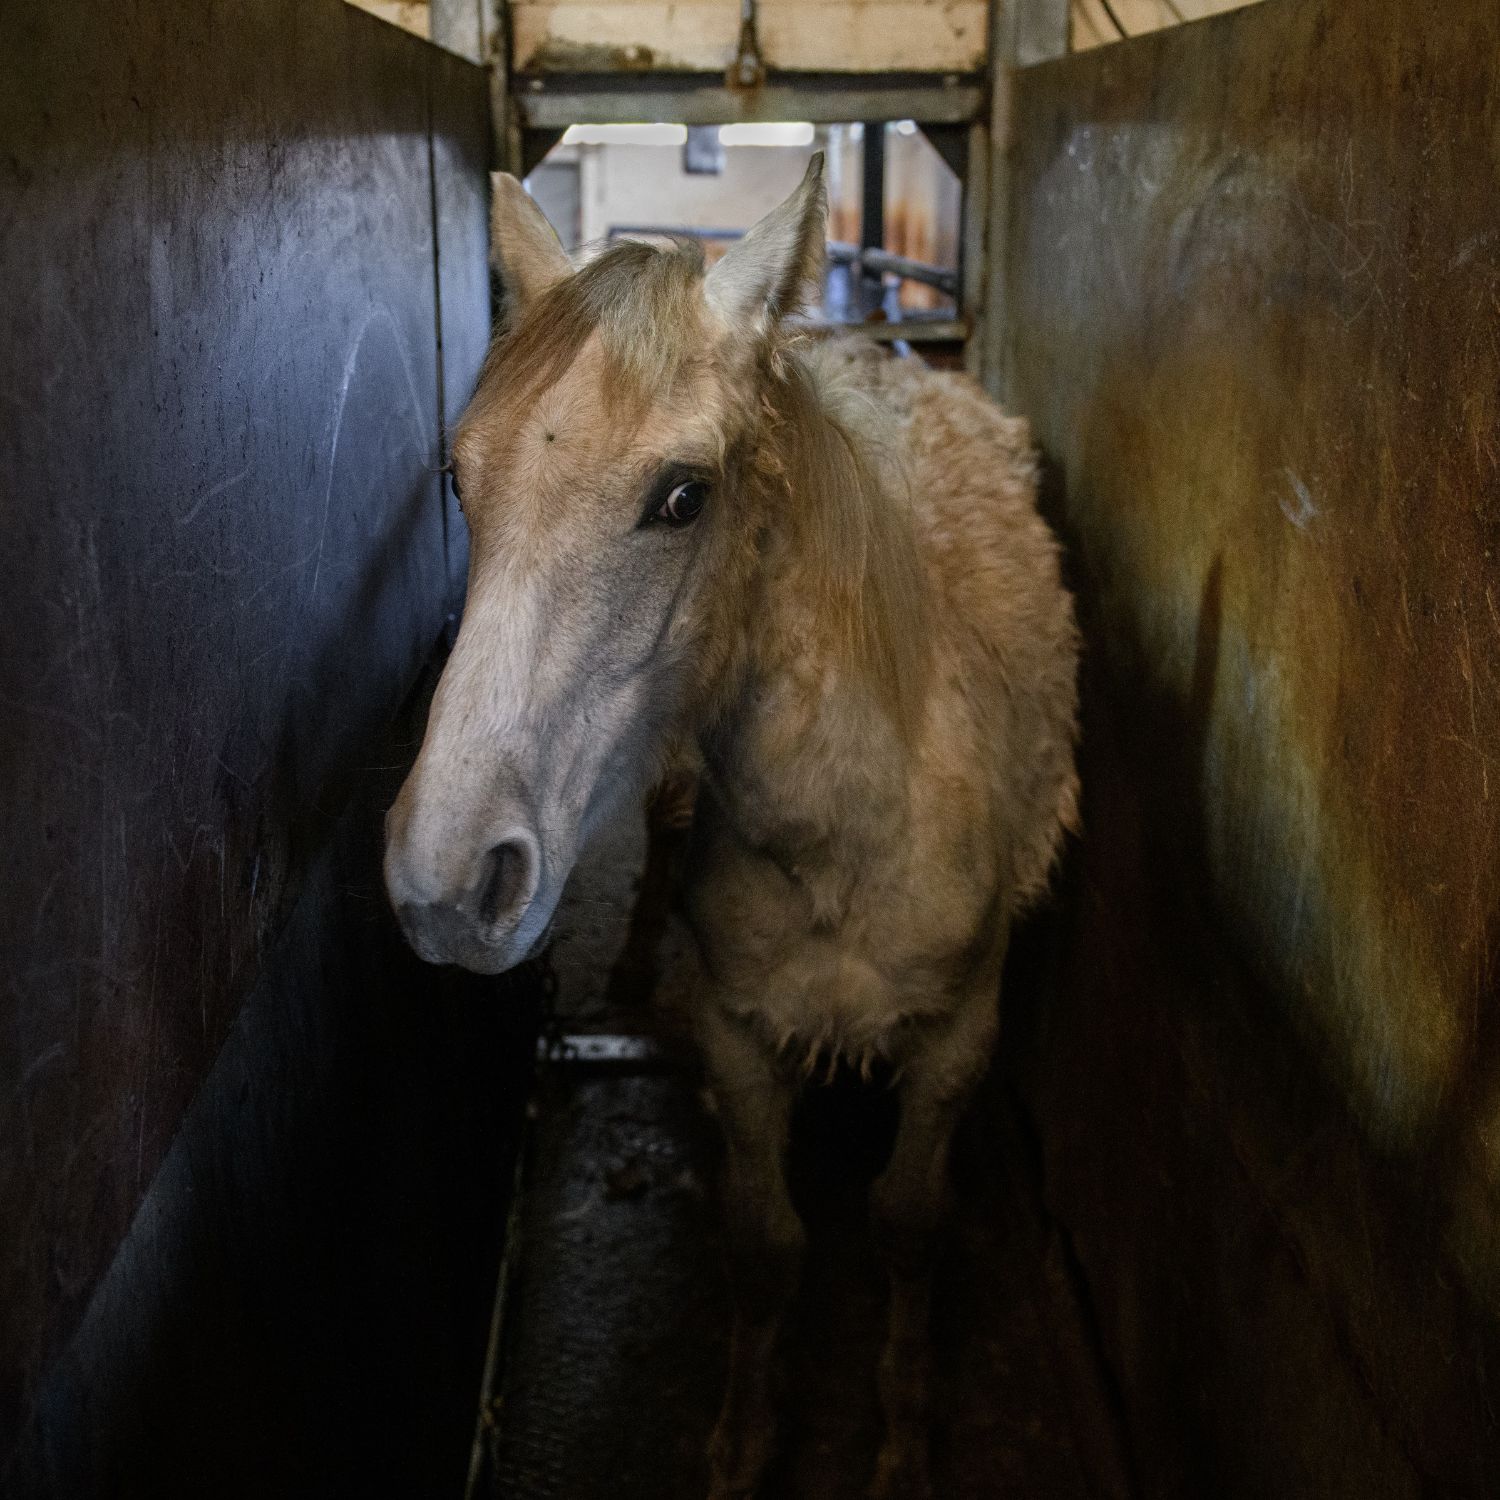 Un caballo blanco mira hacia la cámara con ojos llenos de miedo mientras permanece de pie en la zona de sacrificio del matadero.